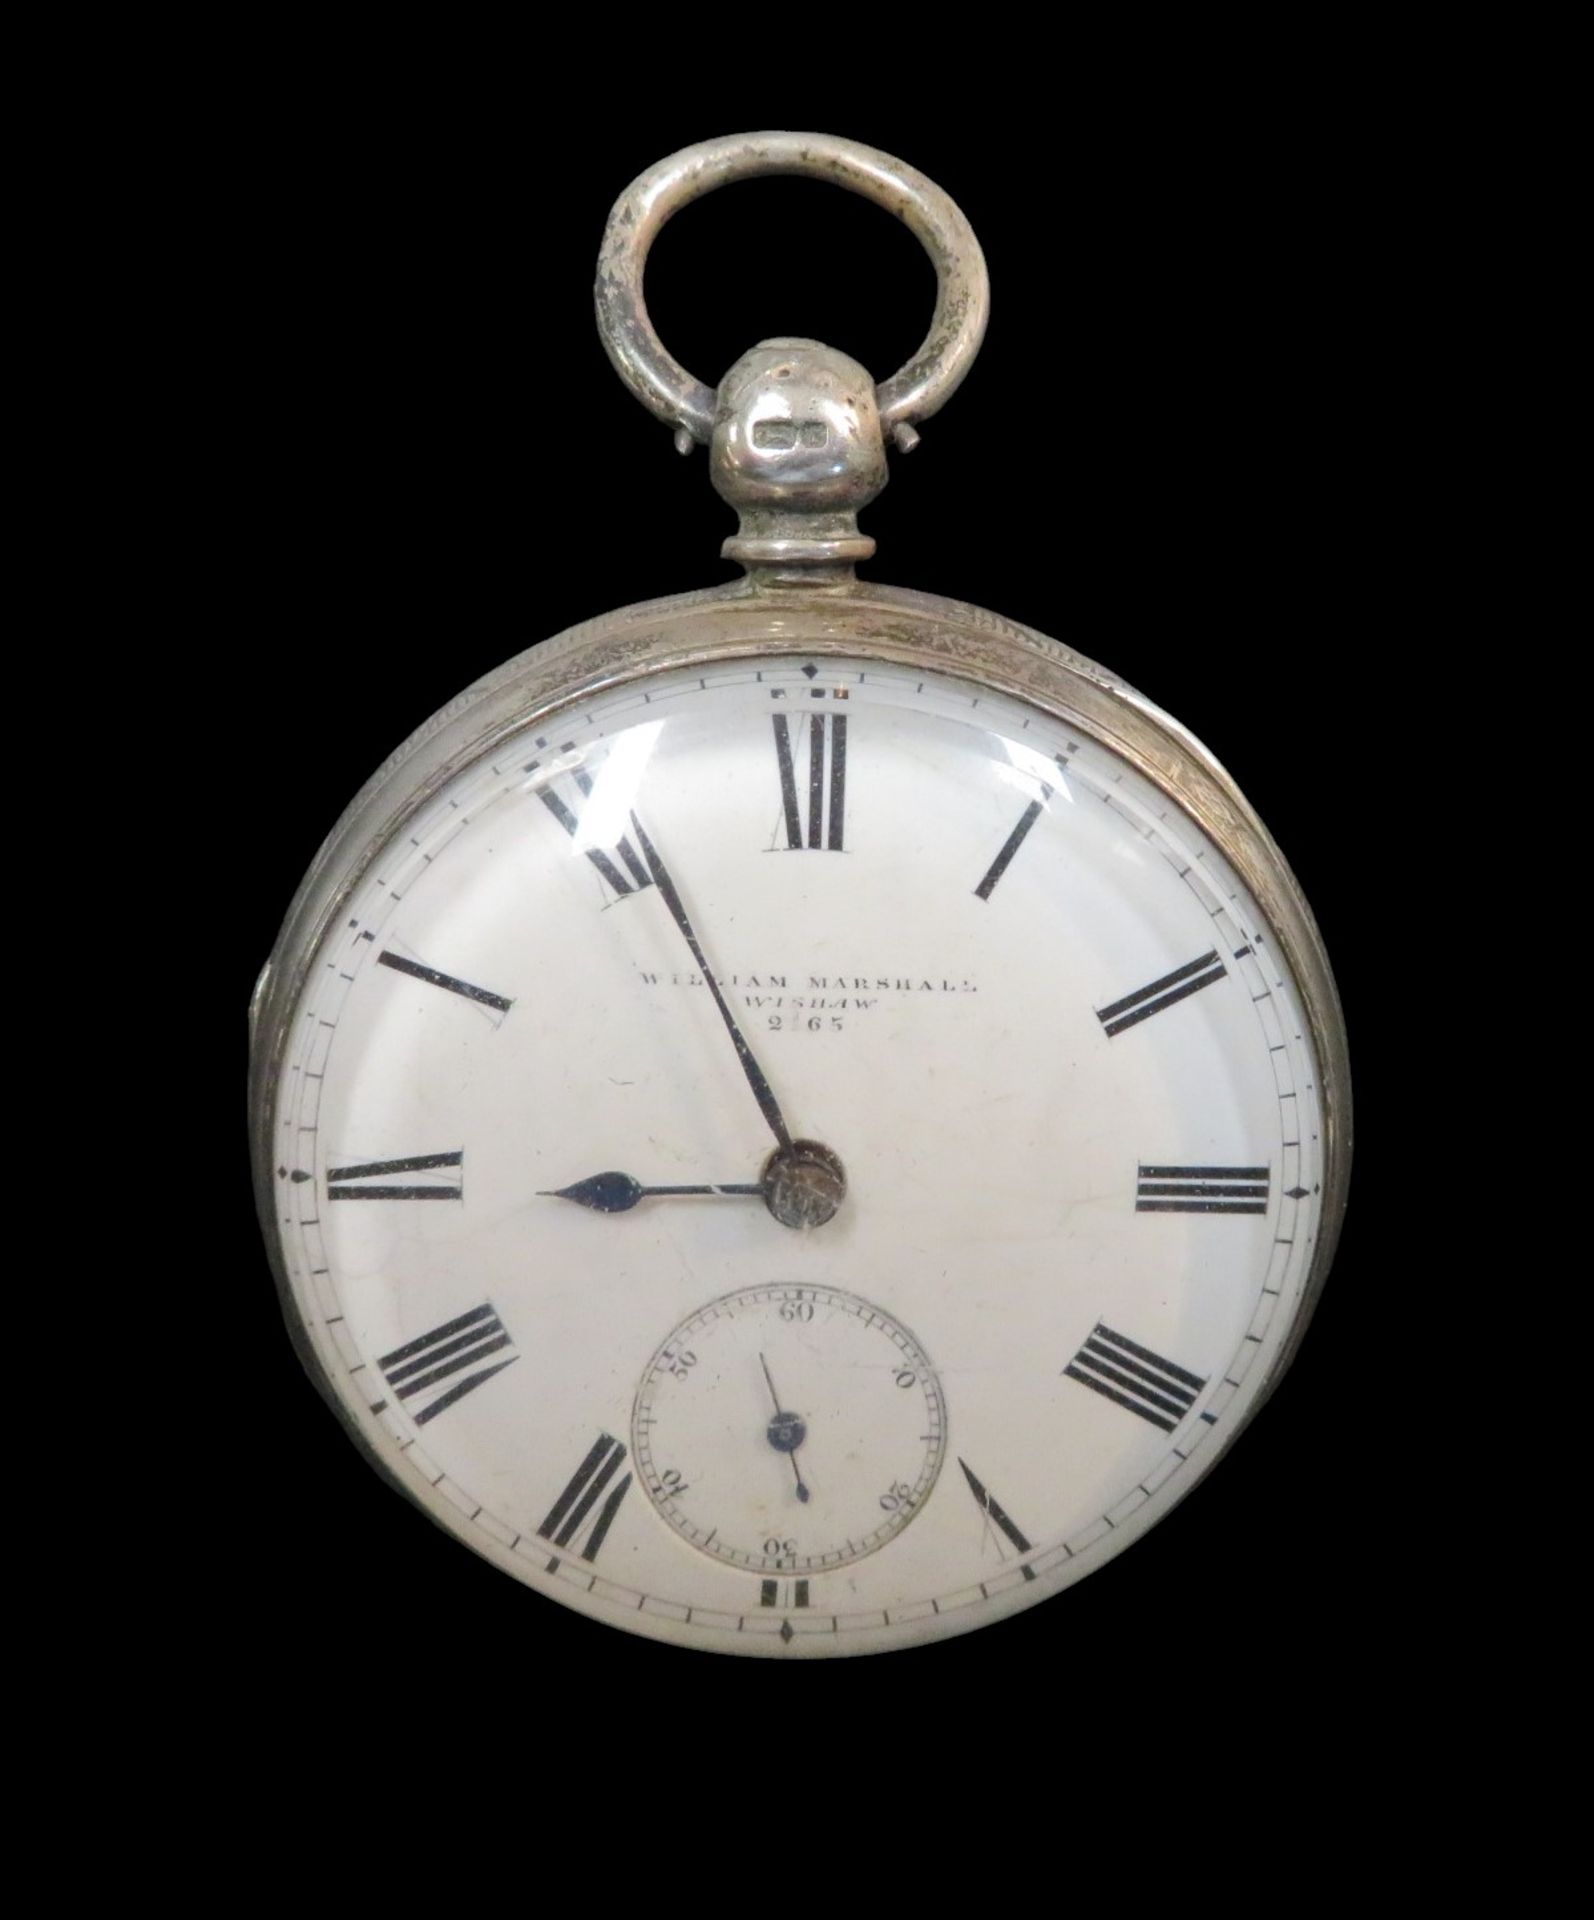 Spindeltaschenuhr, England, William Marshall Wishaw 2165, 18. Jahrhundert, Silber 925/000, punziert